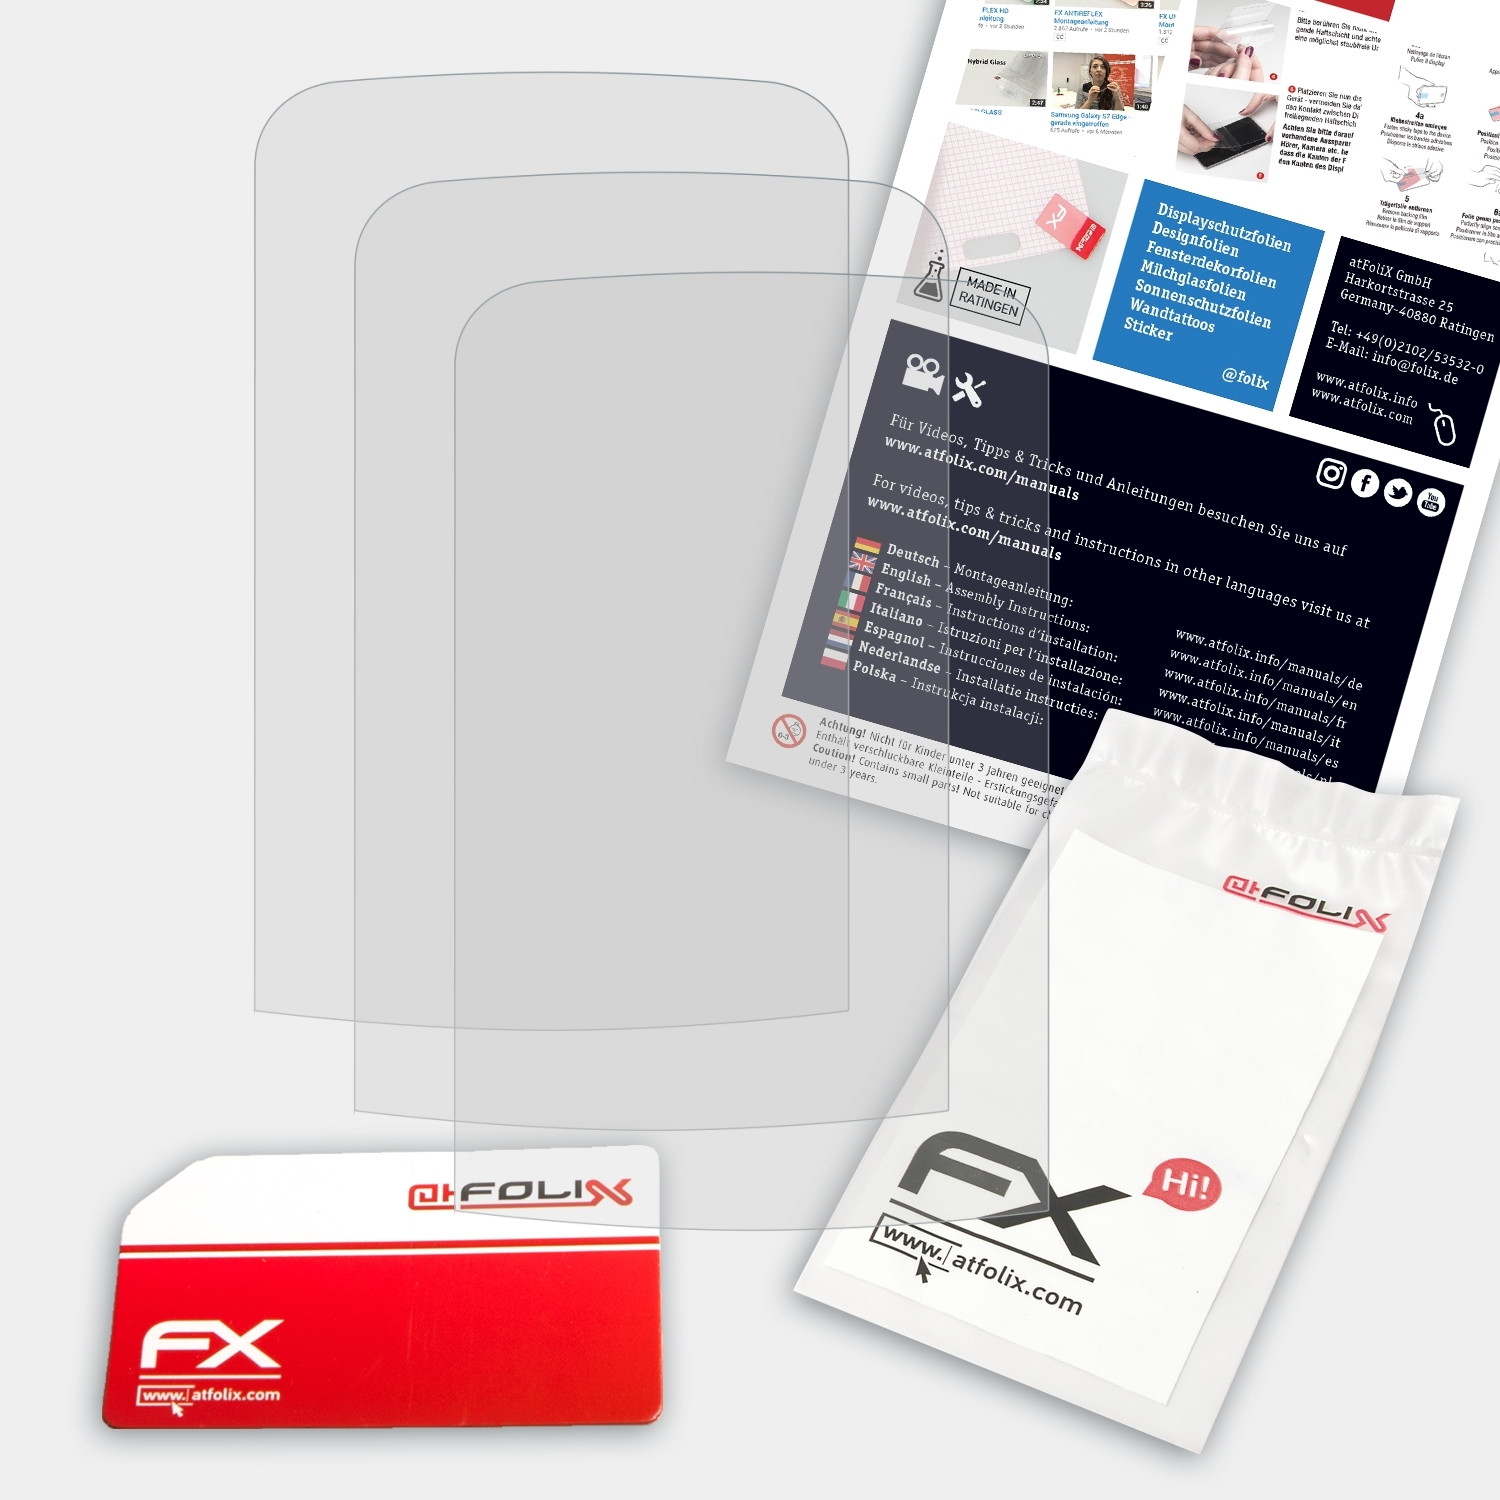 3x Displayschutz(für ATFOLIX C2-02) FX-Antireflex Nokia